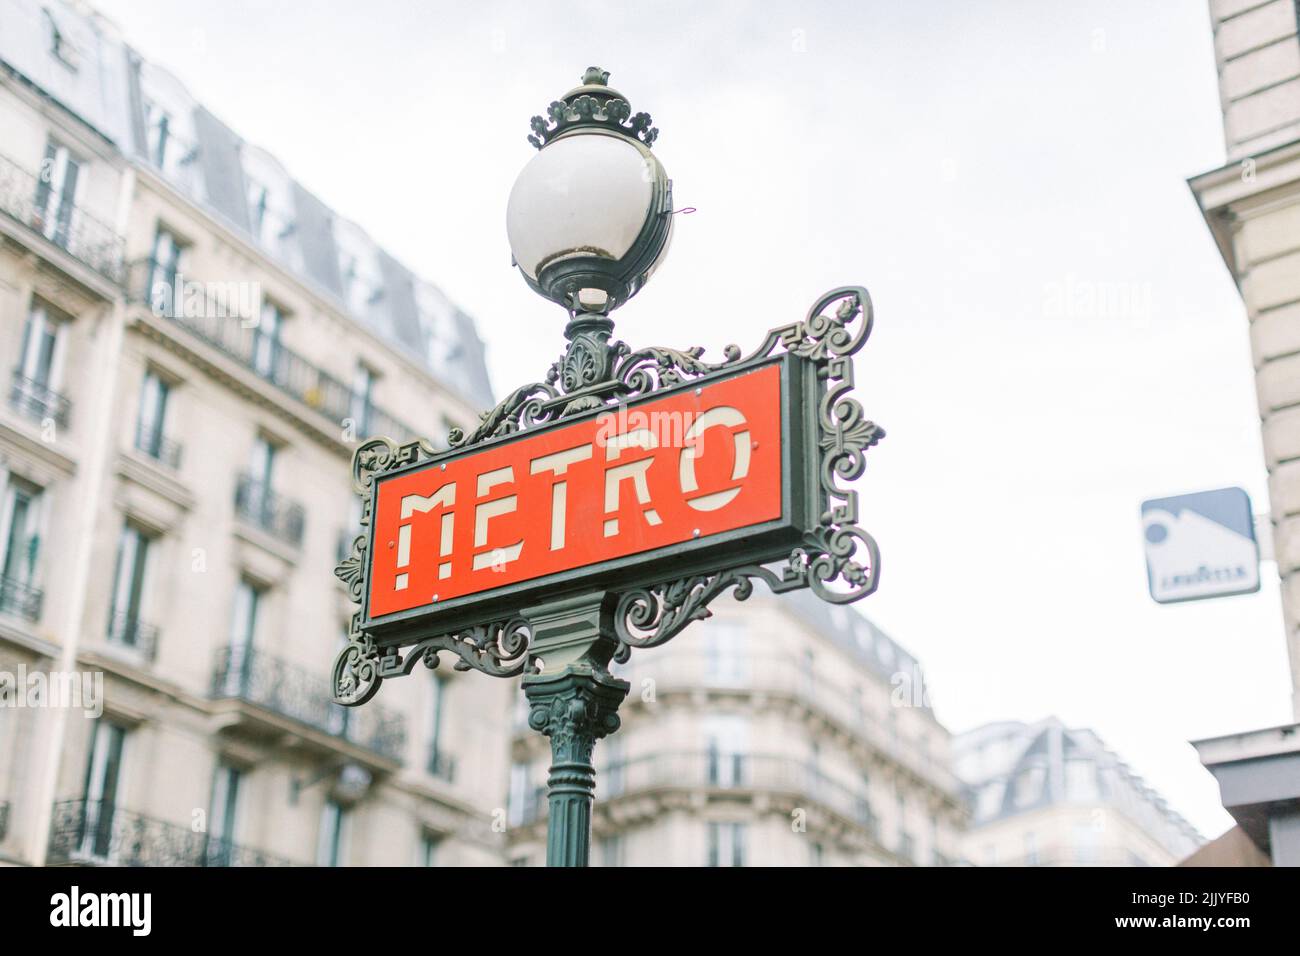 Art deco metro sign in Paris, France Stock Photo